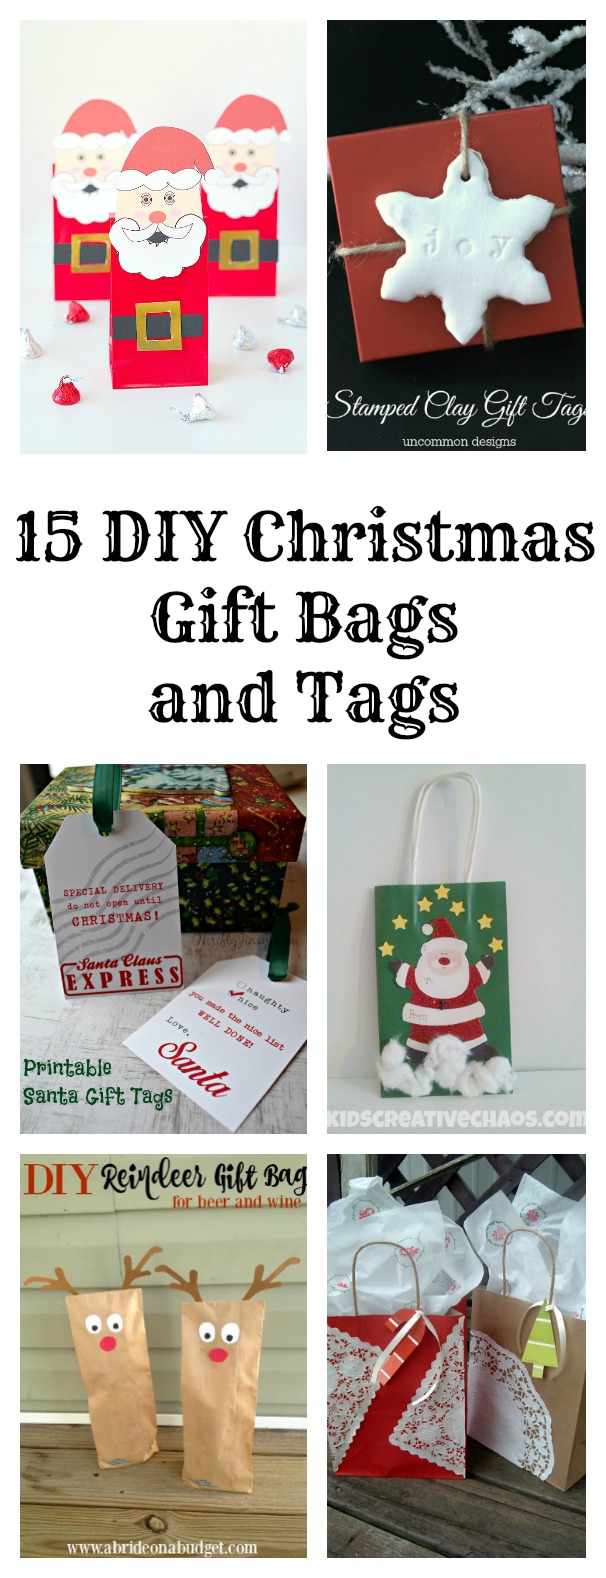 DIY Christmas Gift Bags and Tags